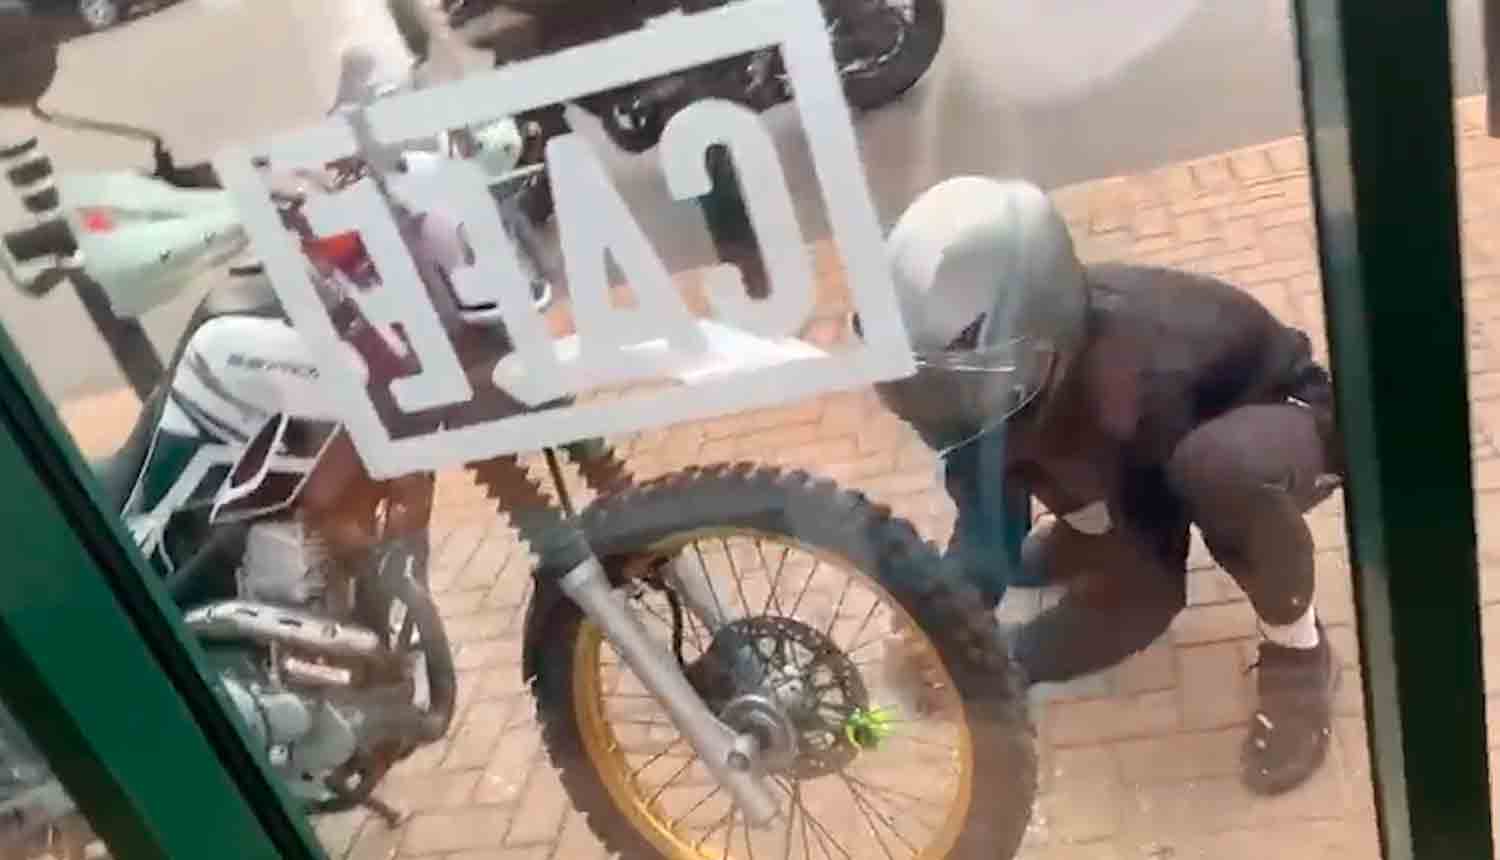 Vídeo: Bandidos roubam moto usando pedra em frente a lanchonete cheia e ninguém faz nada. Foto: Reprodução Twitter @MCNnews